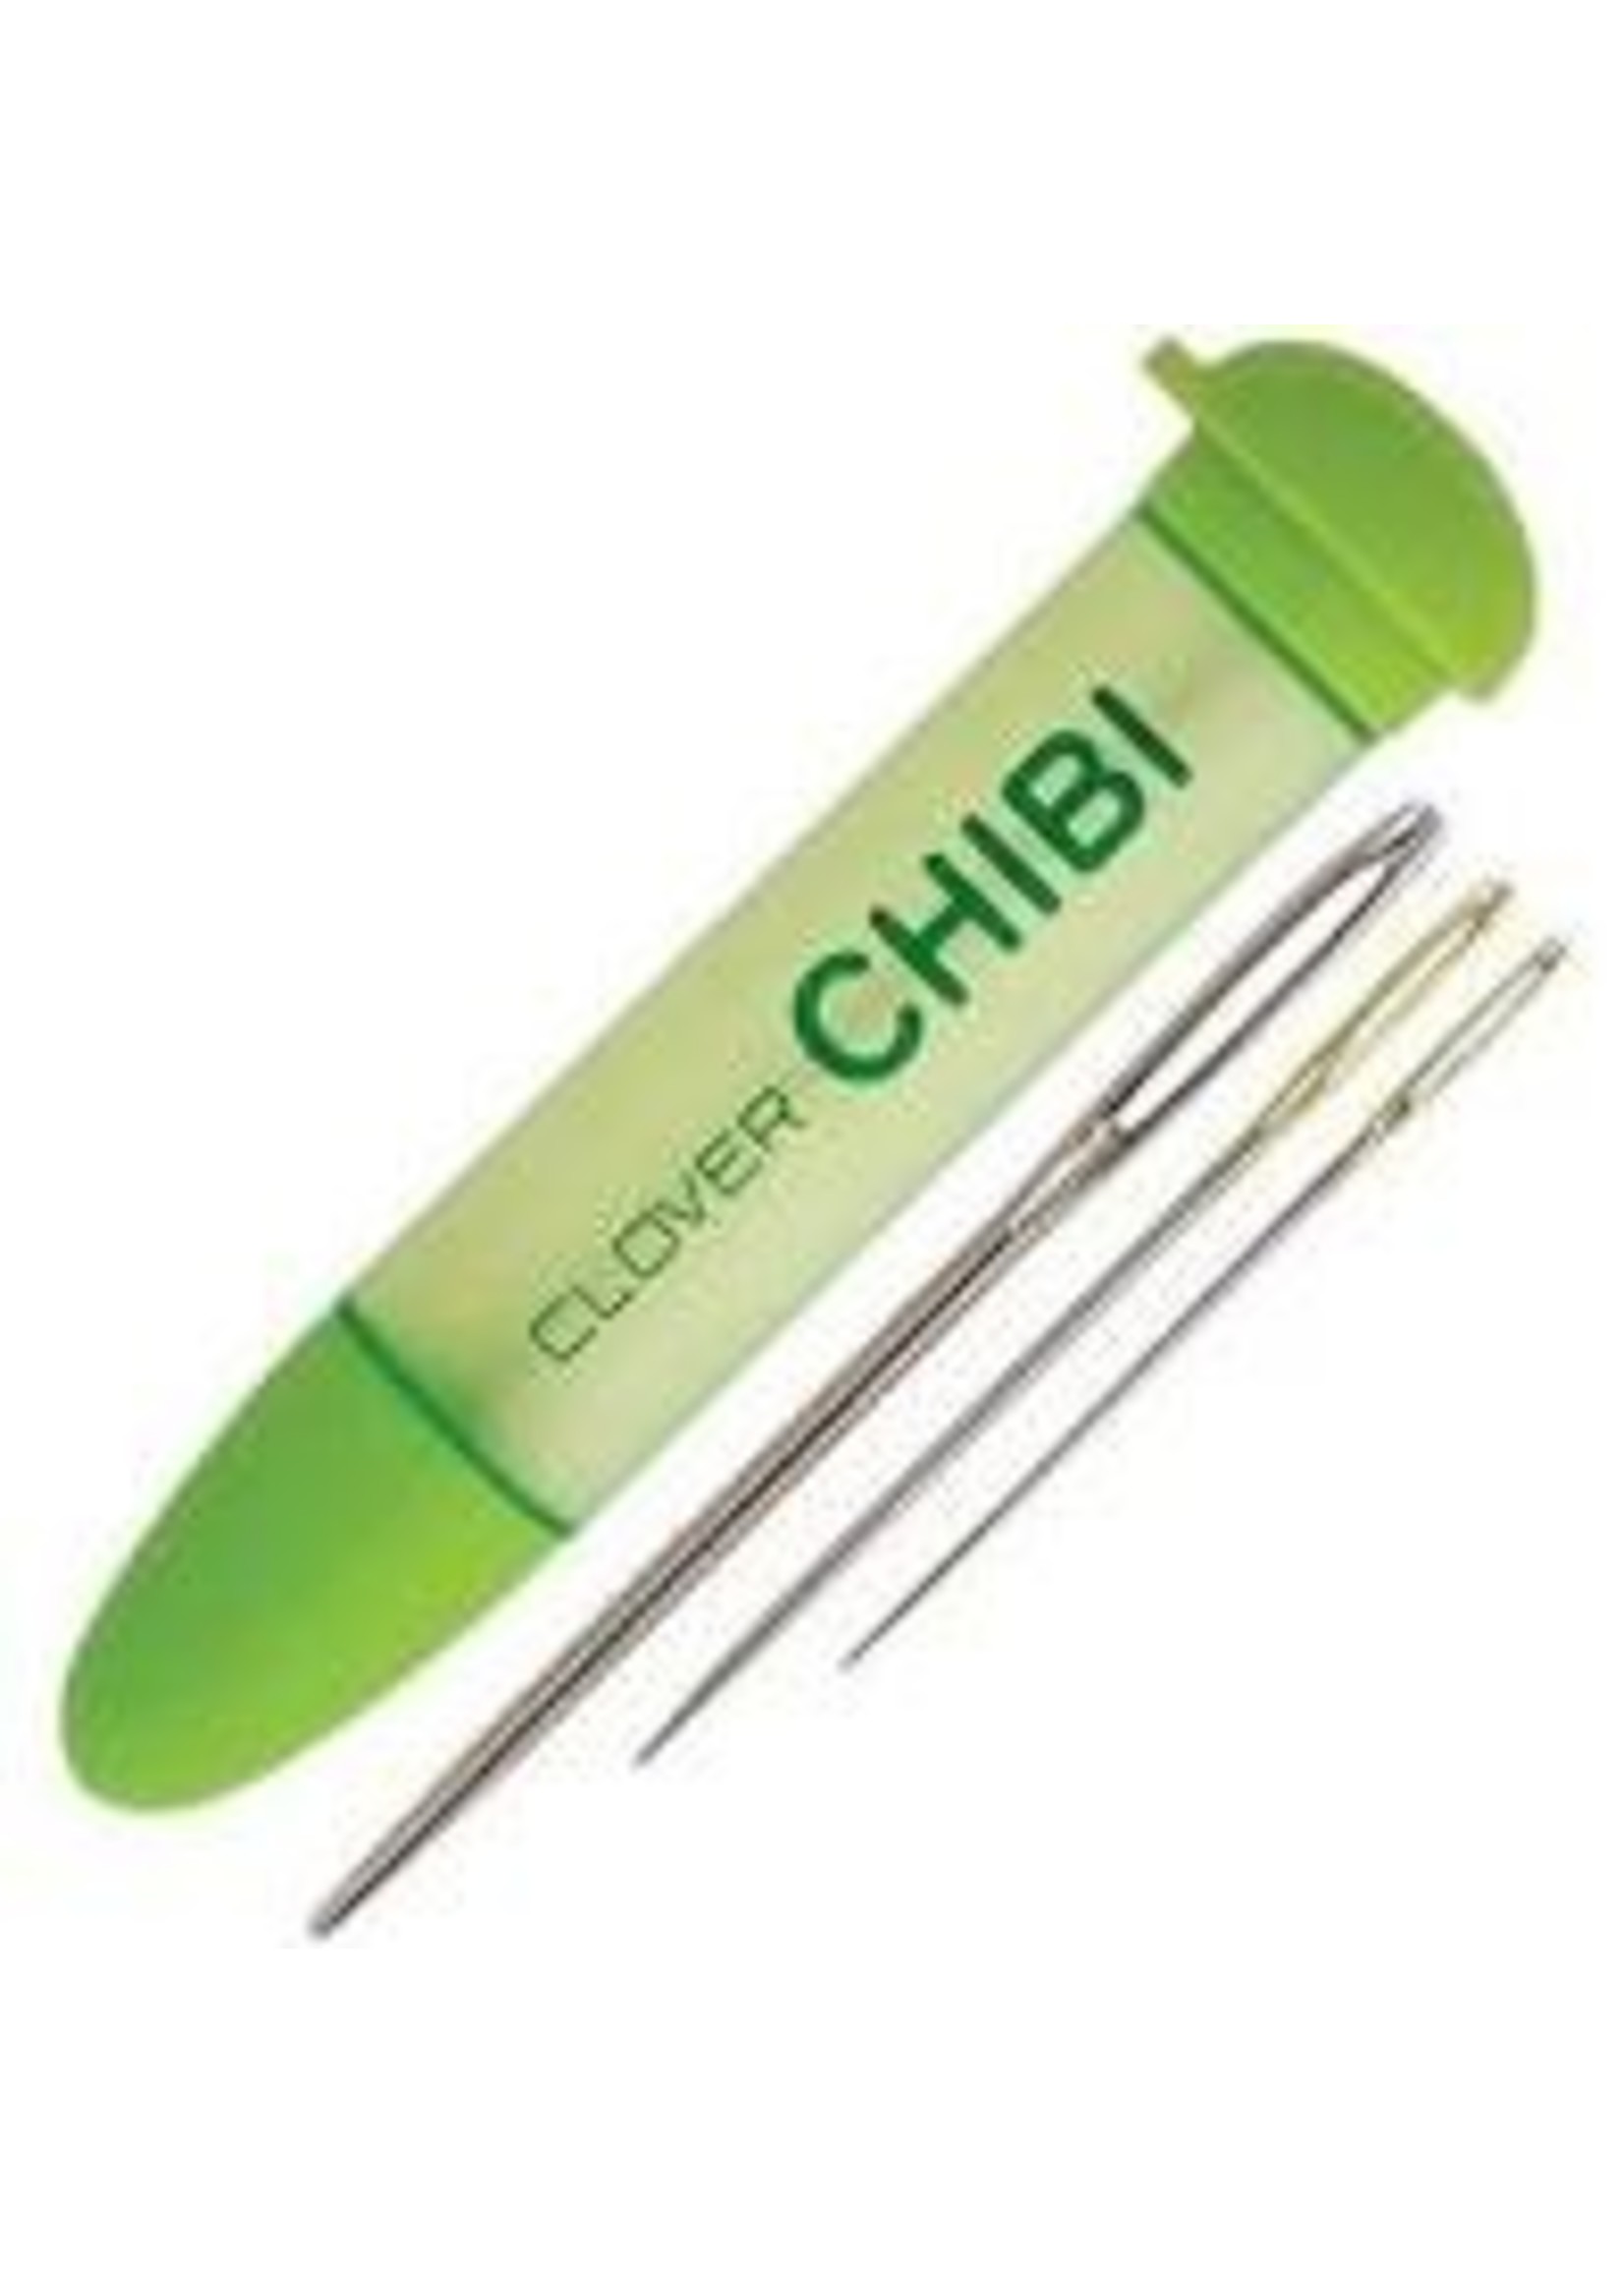 Clover Chibi Darning Needle Set 339